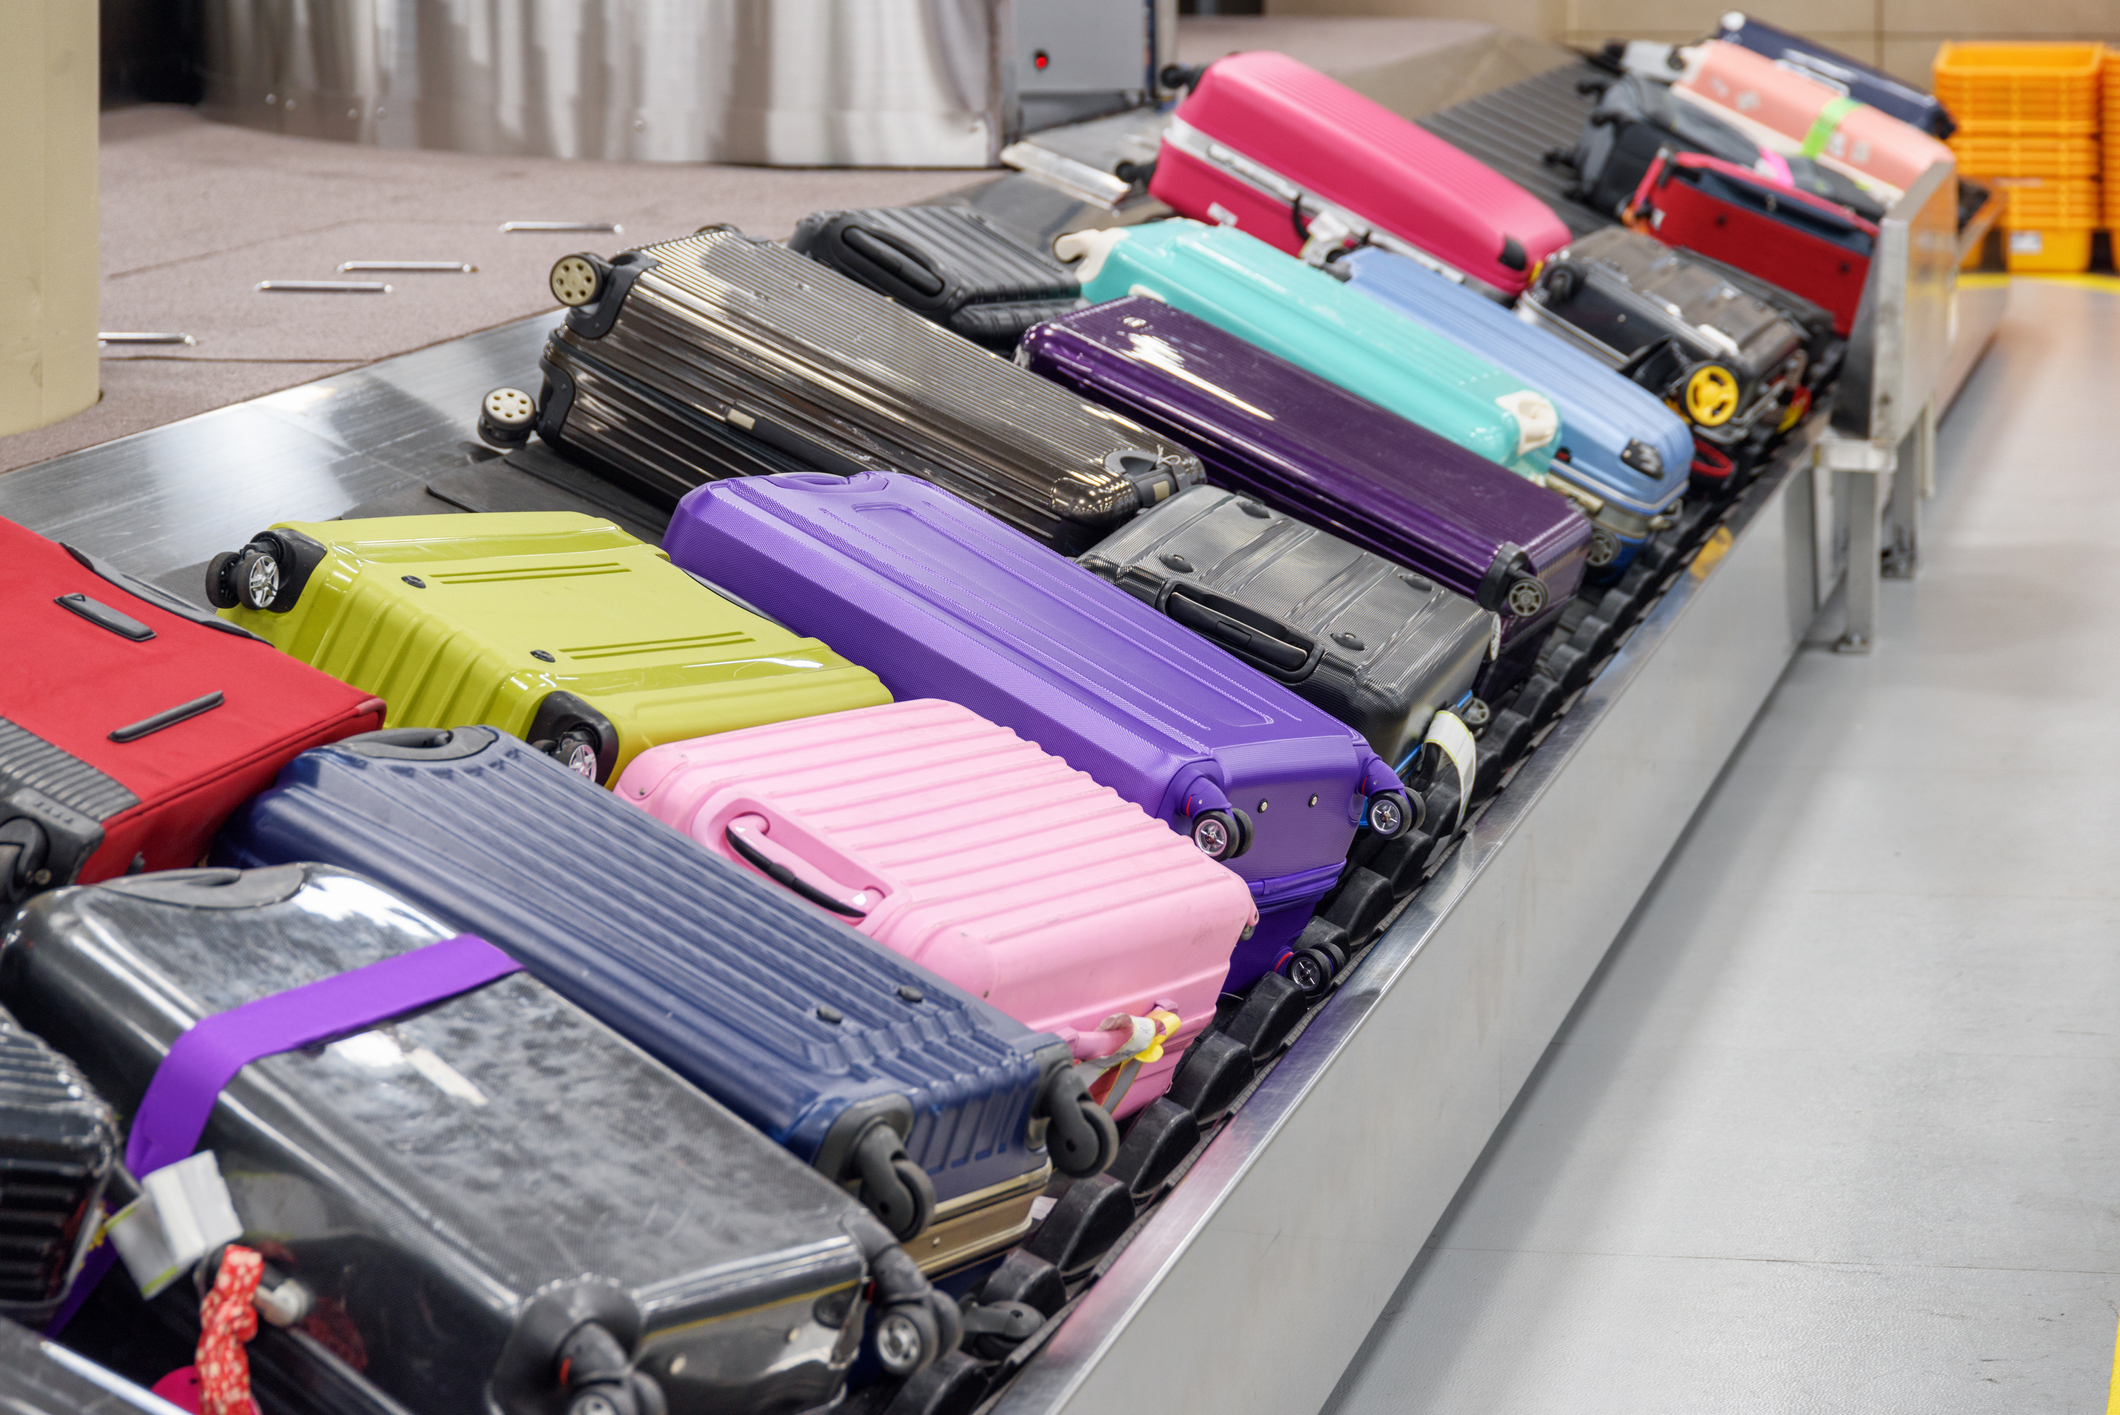 Koffer stapeln sich in großer Menge auf einem Gepäckband.